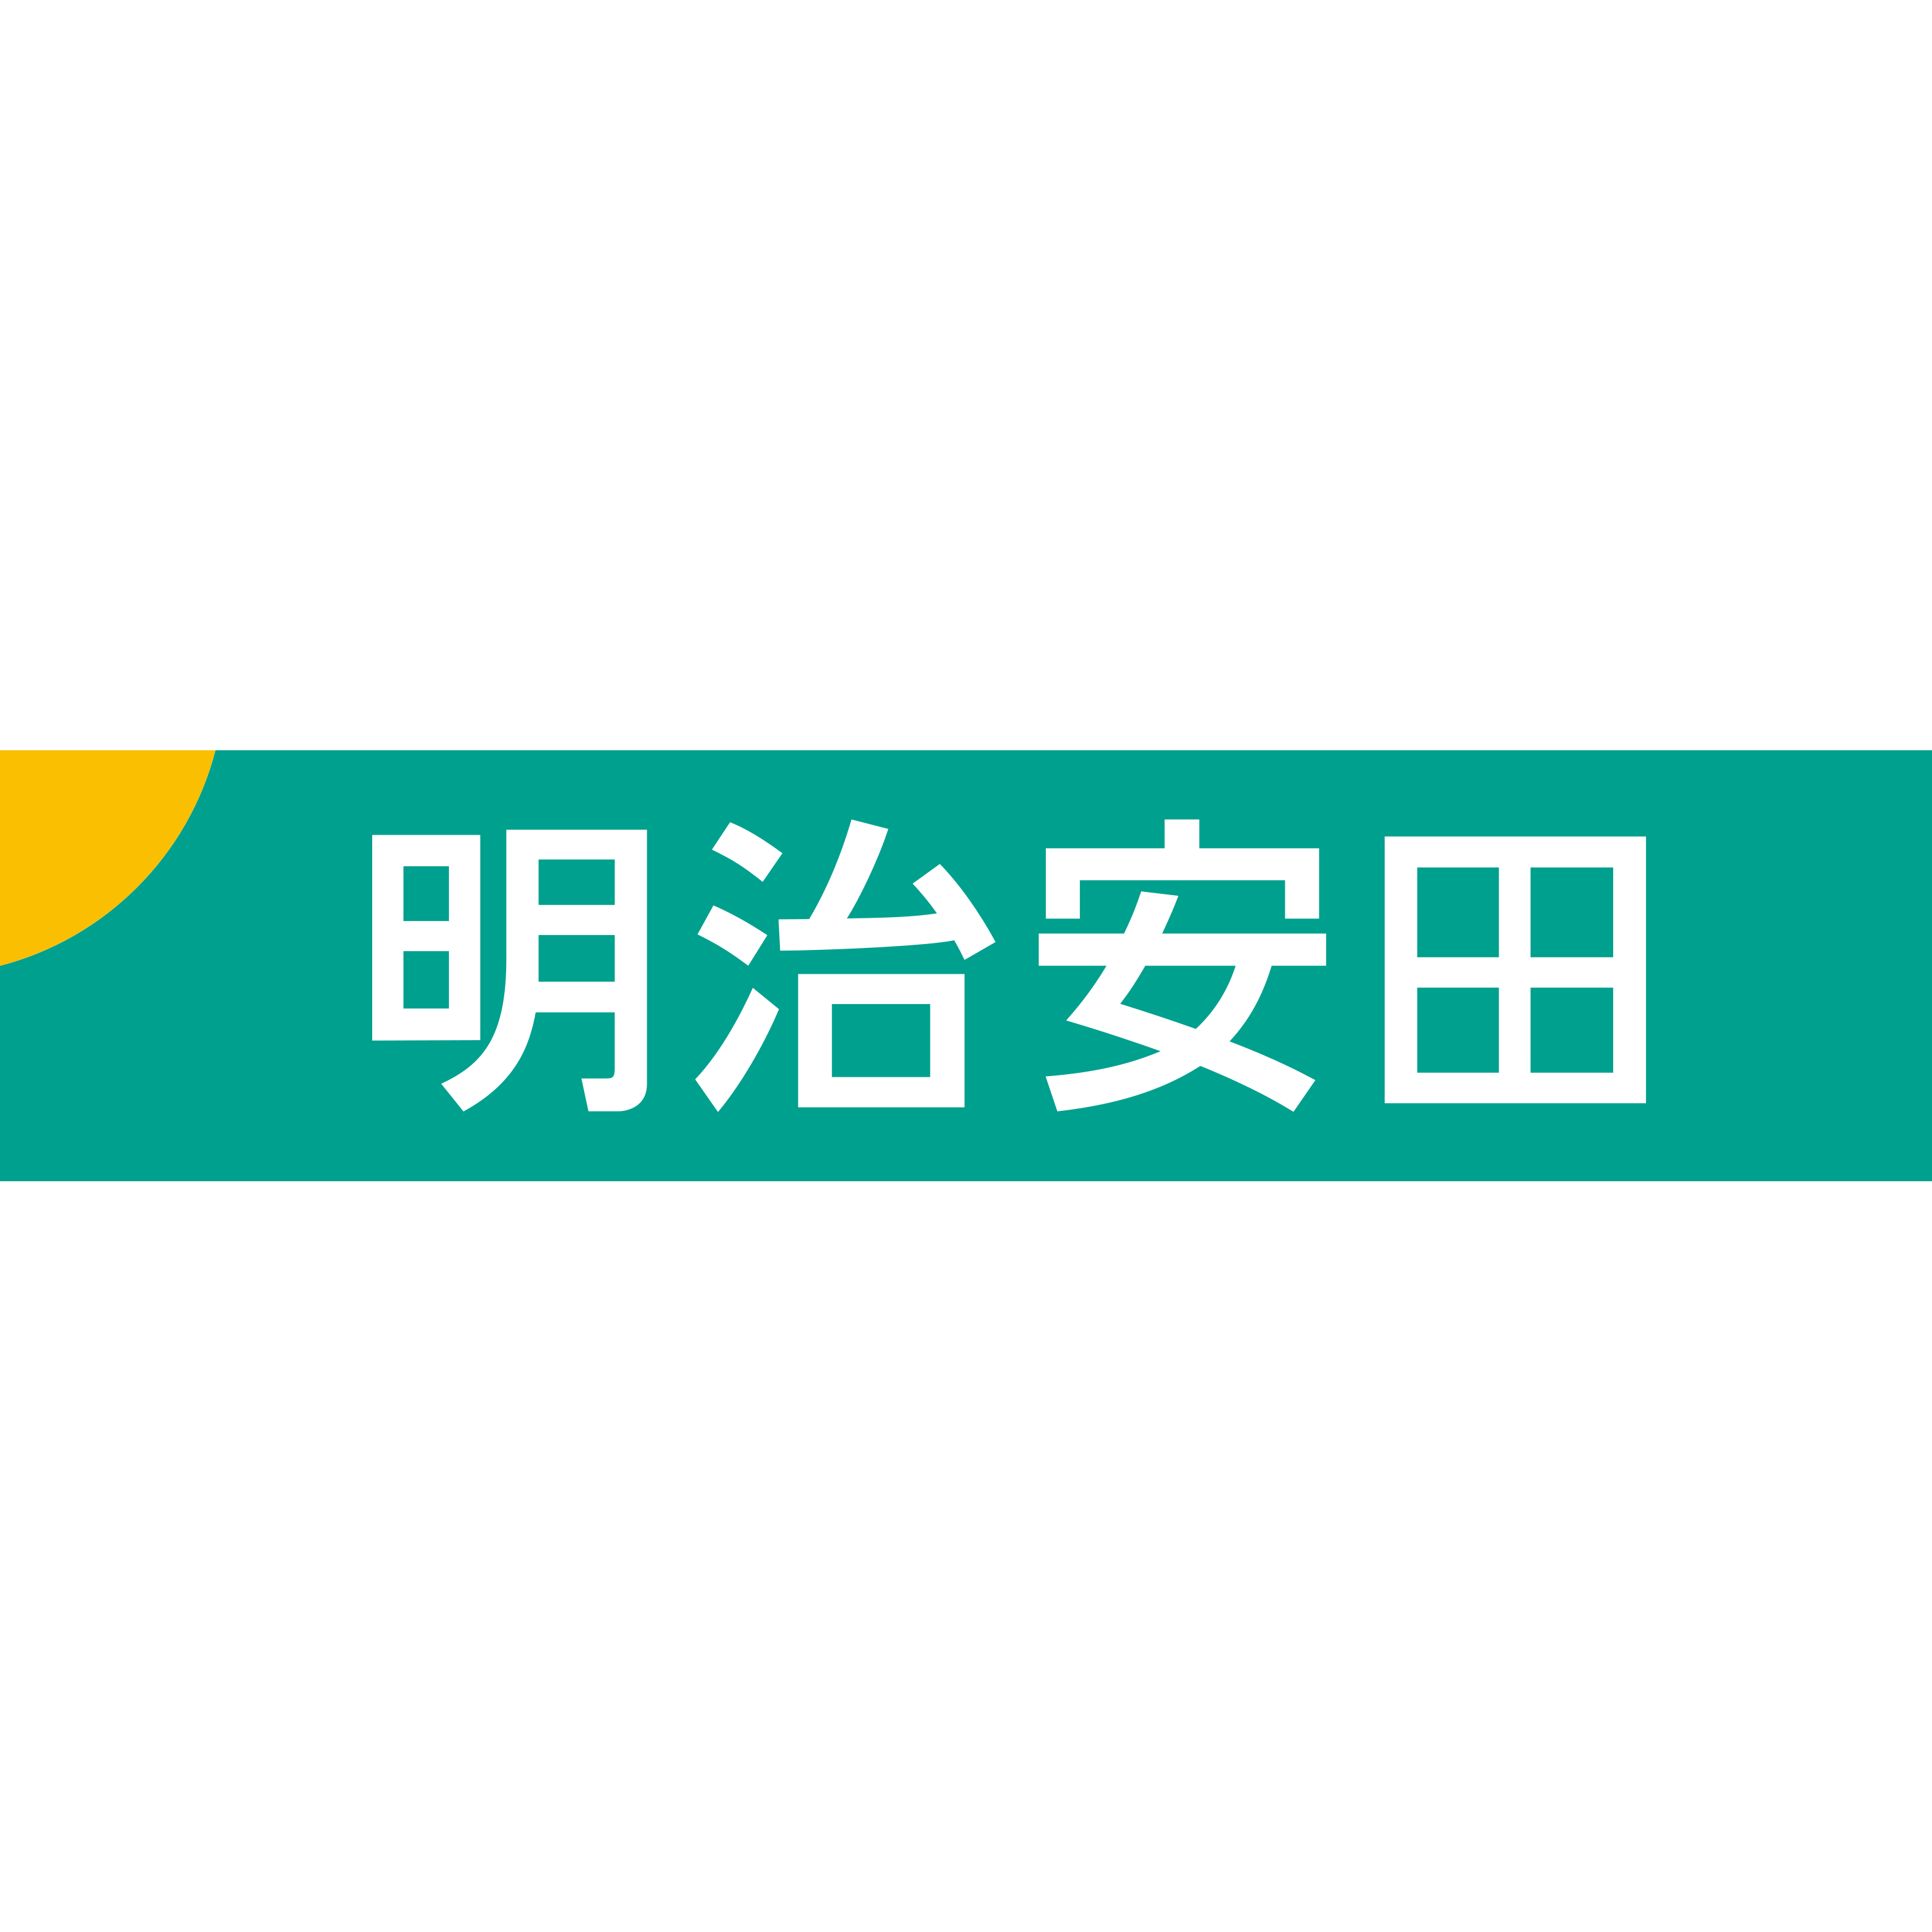 Meiji Yasuda Life Logo  Transparent Image